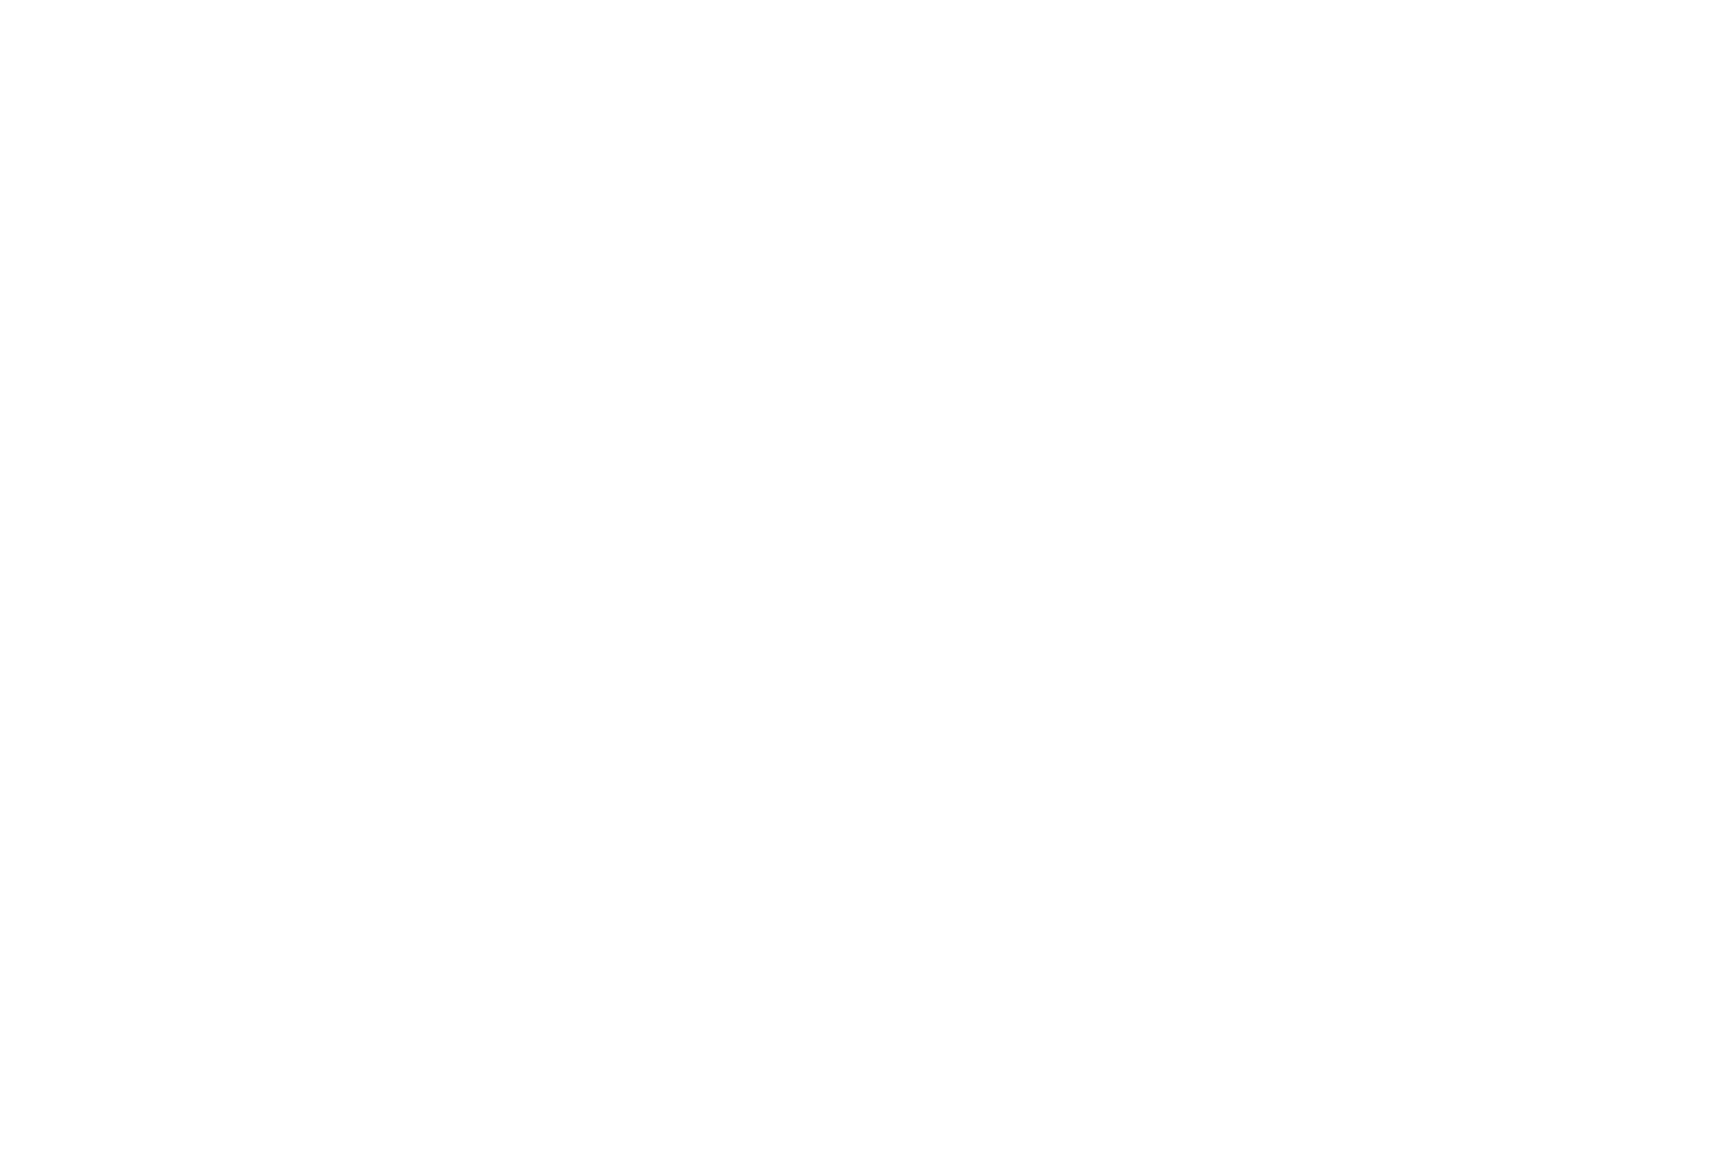 MUSIC VIDEO - Aasha International Film Festival - 2021